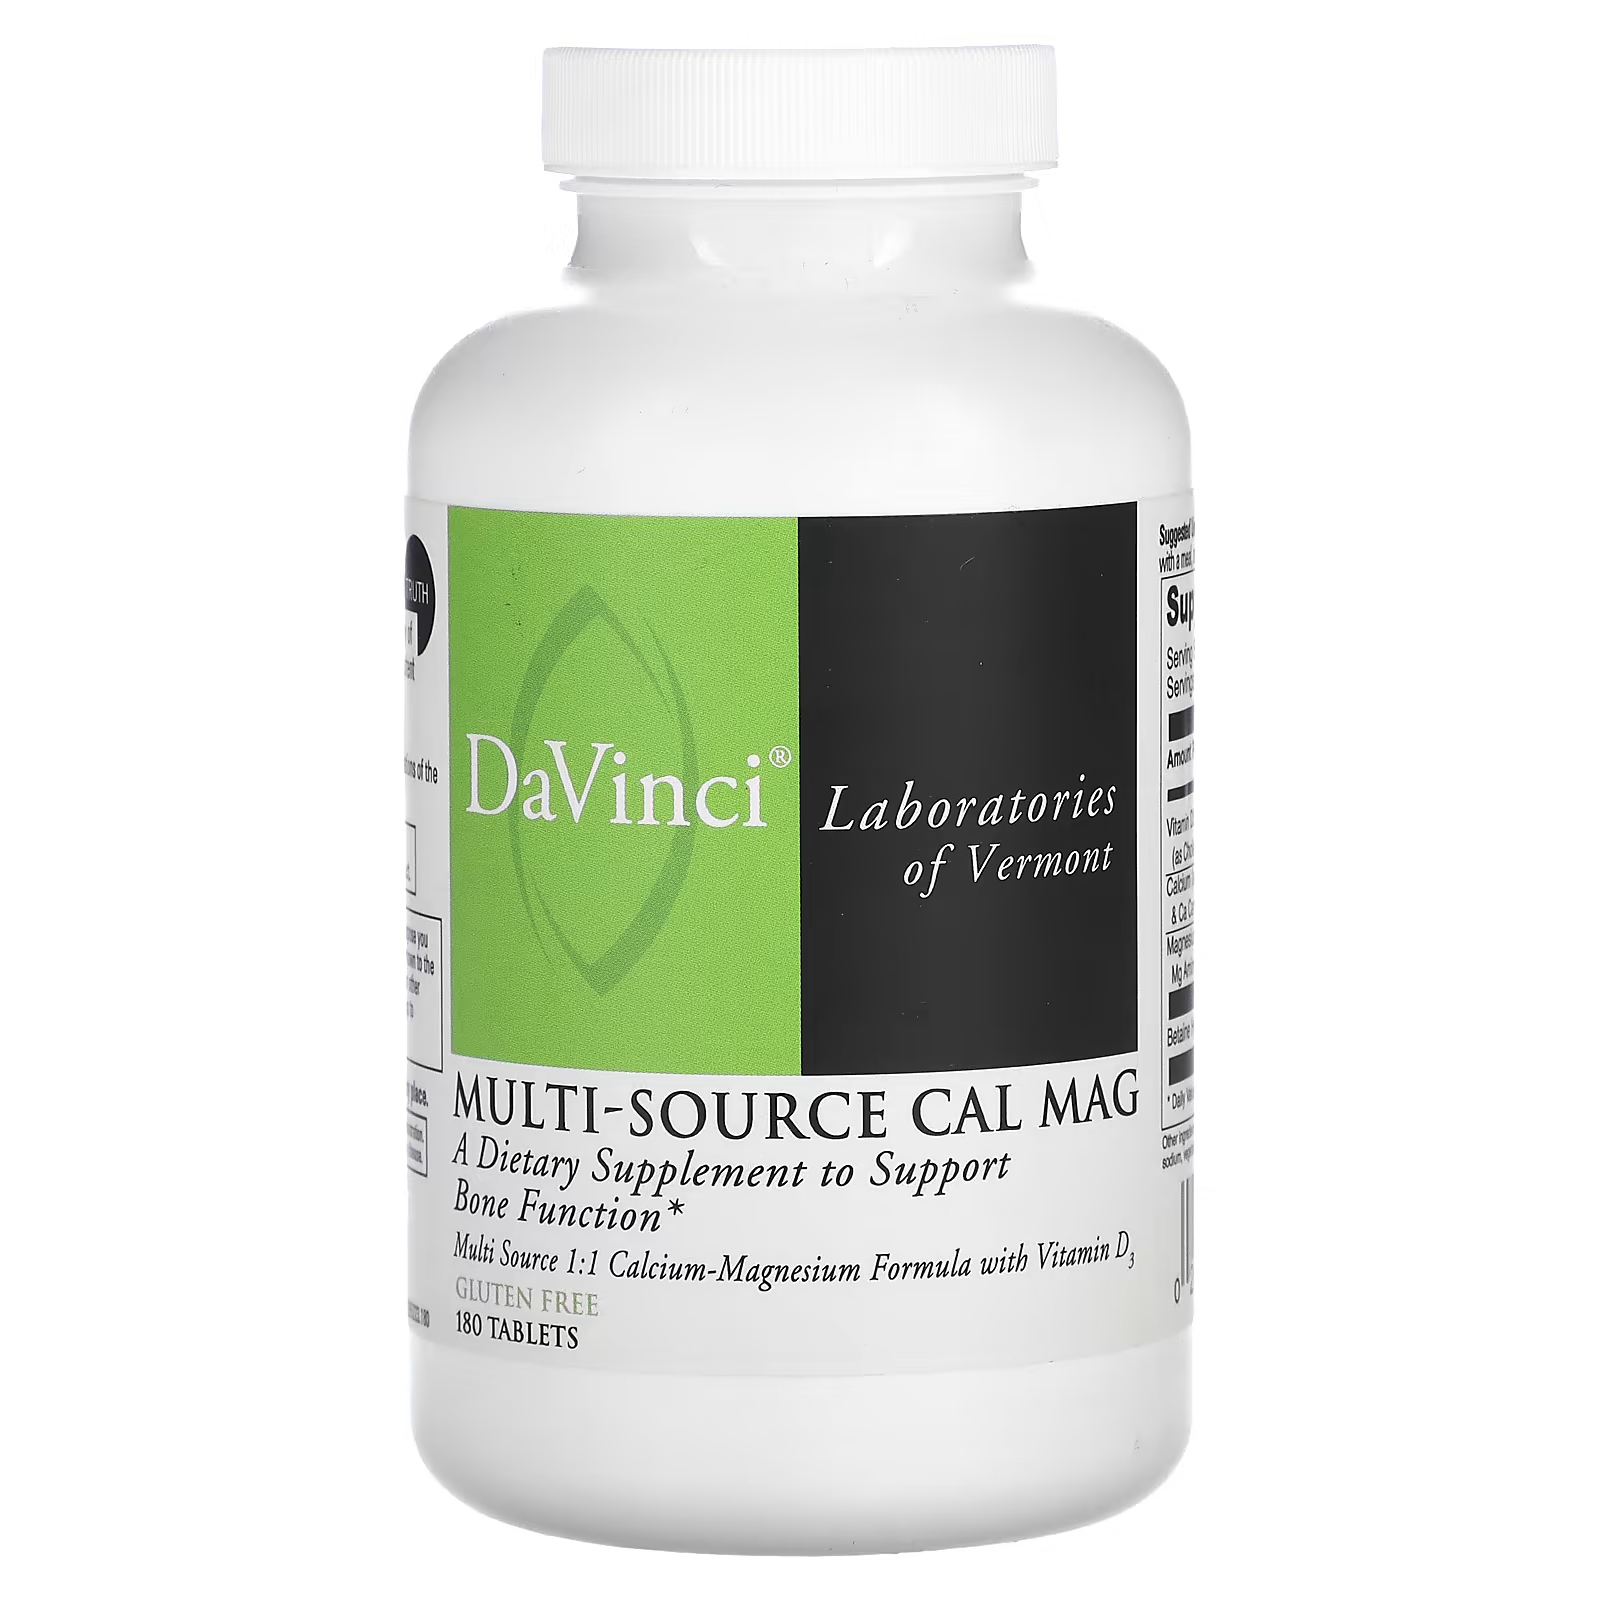 Пищевая добавка DaVinci Laboratories of Vermont Multi-Source Cal Mag, 180 таблеток citracal добавка с кальцием и витамином d3 маленькие таблетки 100 капсул с покрытием